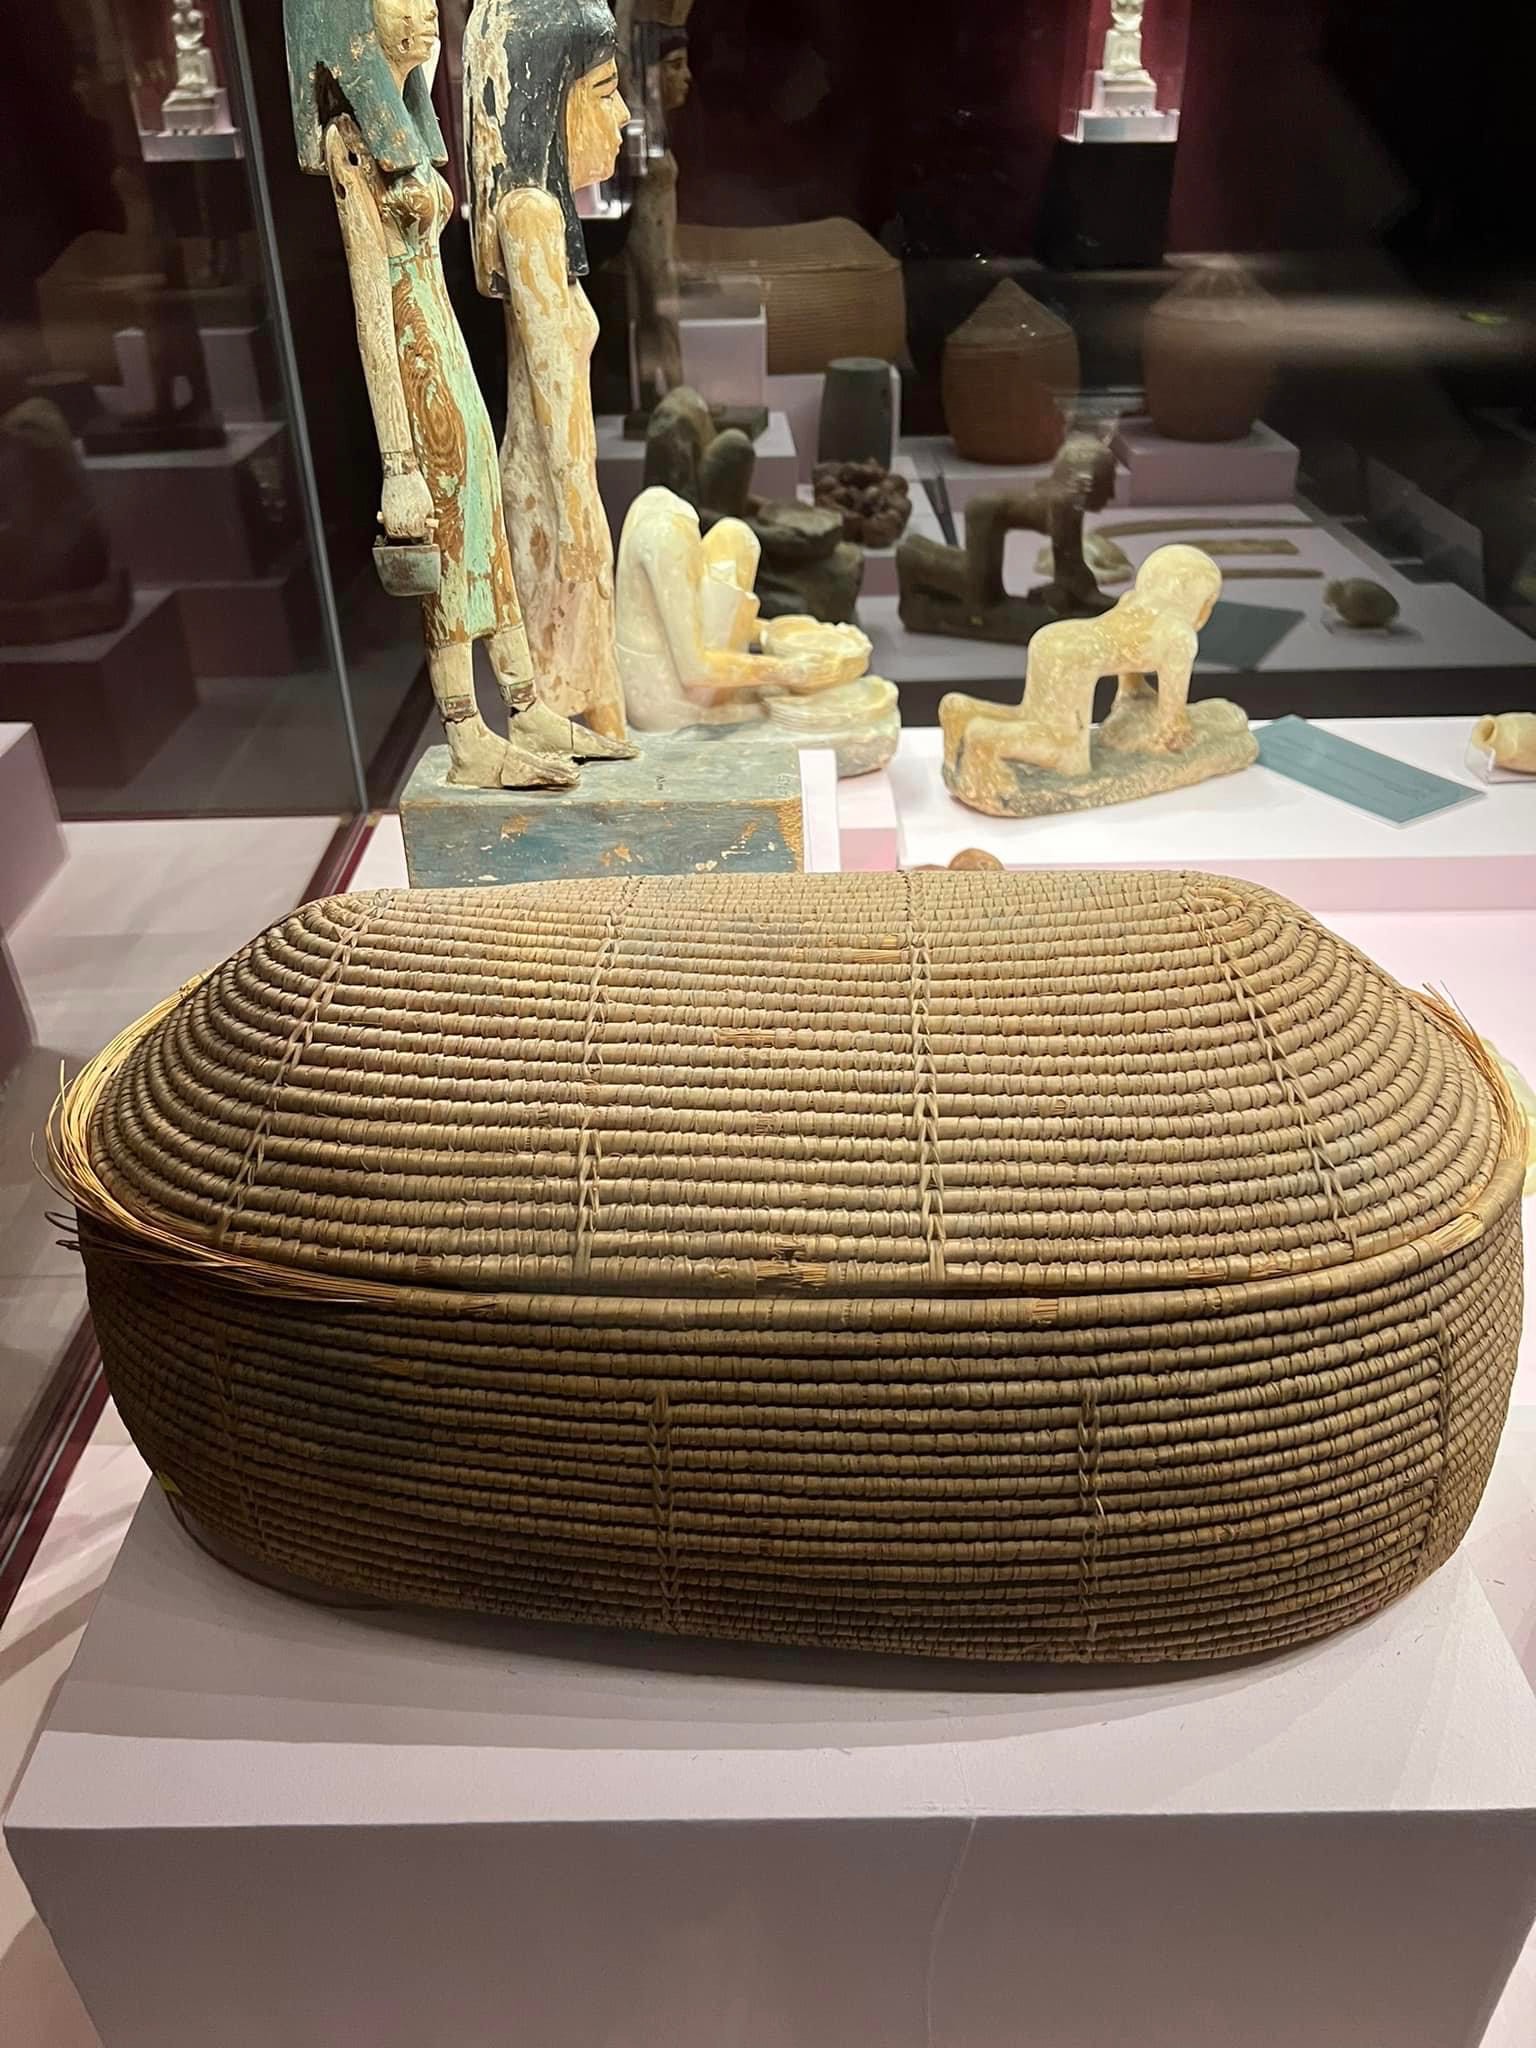 أدوات المطبخ عند المصريين القدماء بمتحف آثار الغردقة (2)